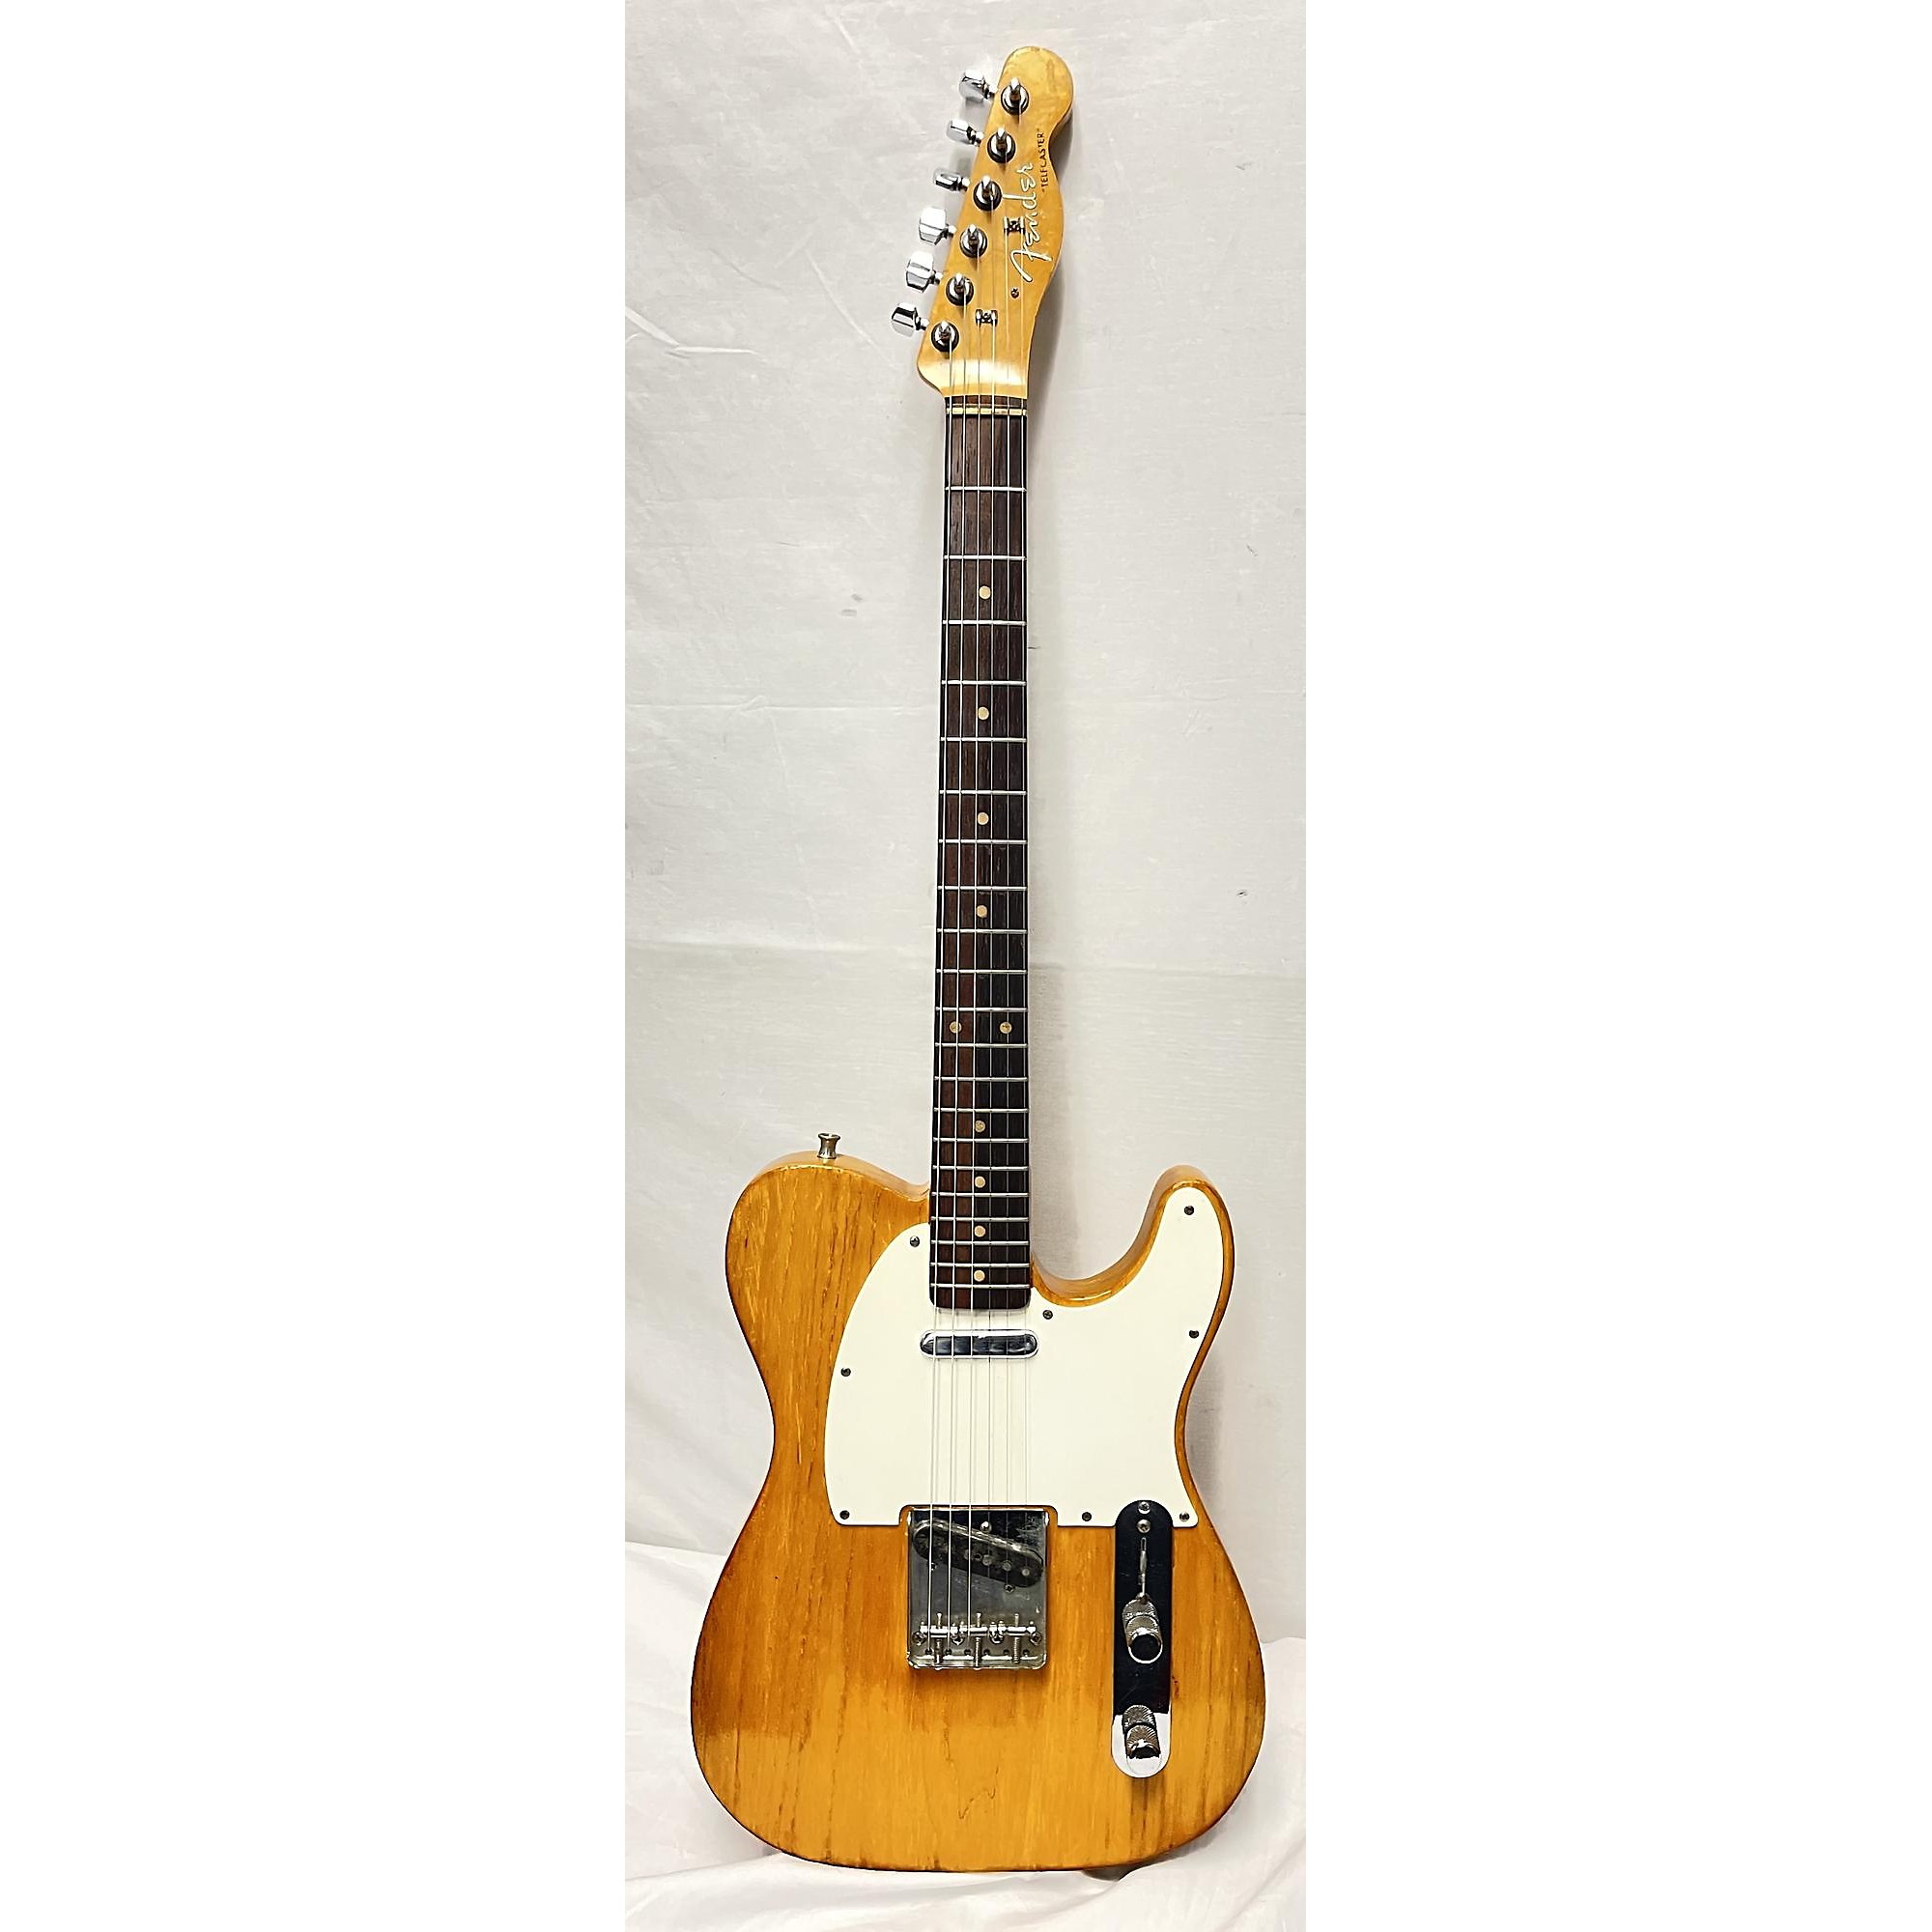 Vintage Fender Solid Body Electric Guitar | Guitar Center